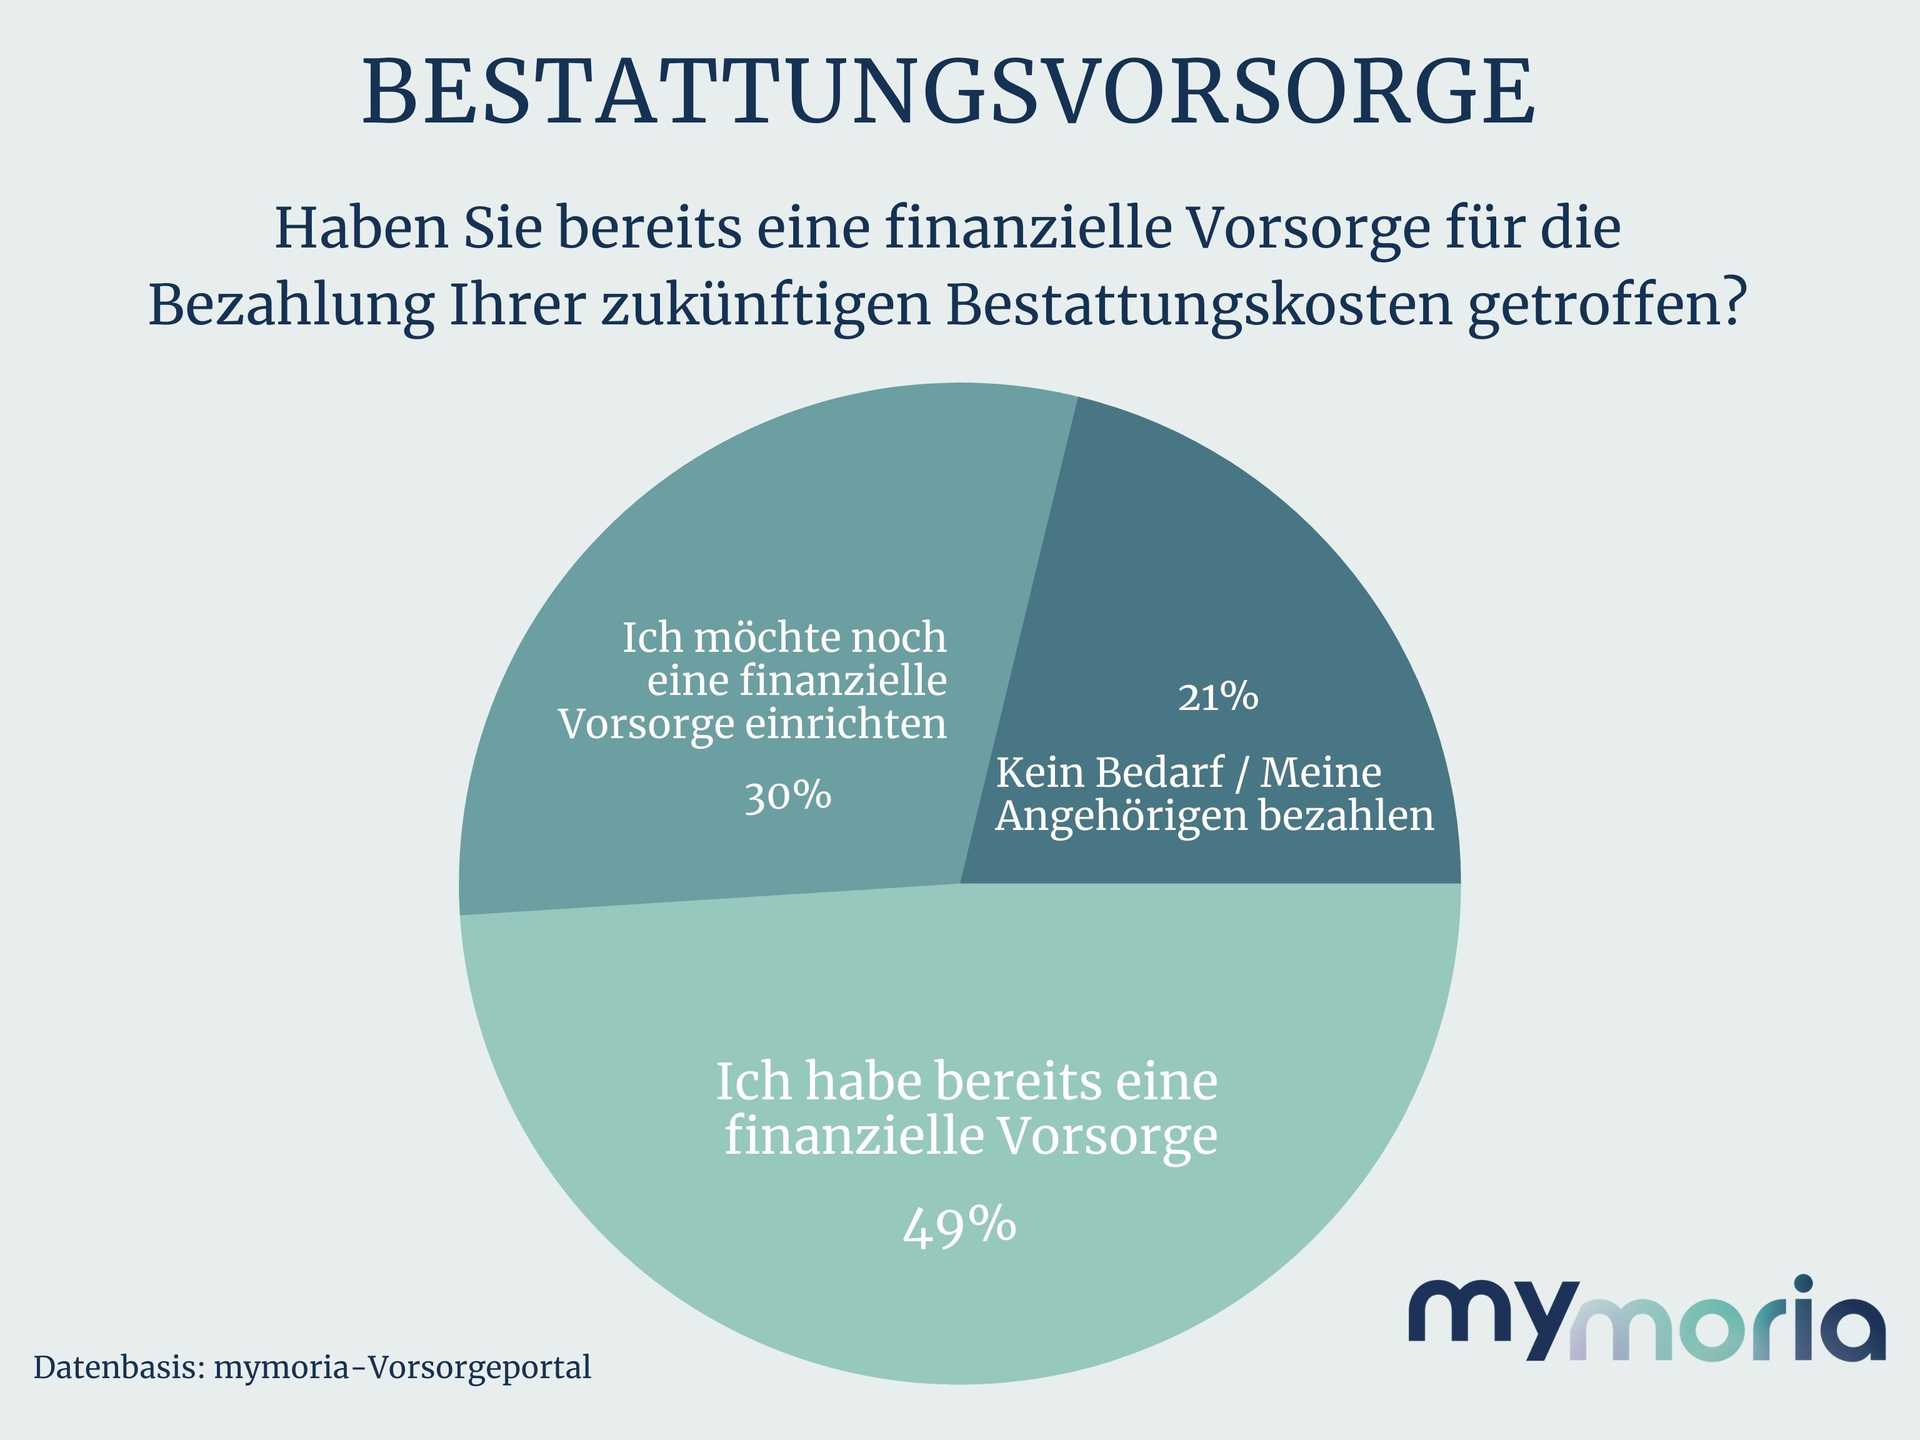 mymoria_Bestattungsvorsorge_finanziell_deutschlandweit (1).jpg